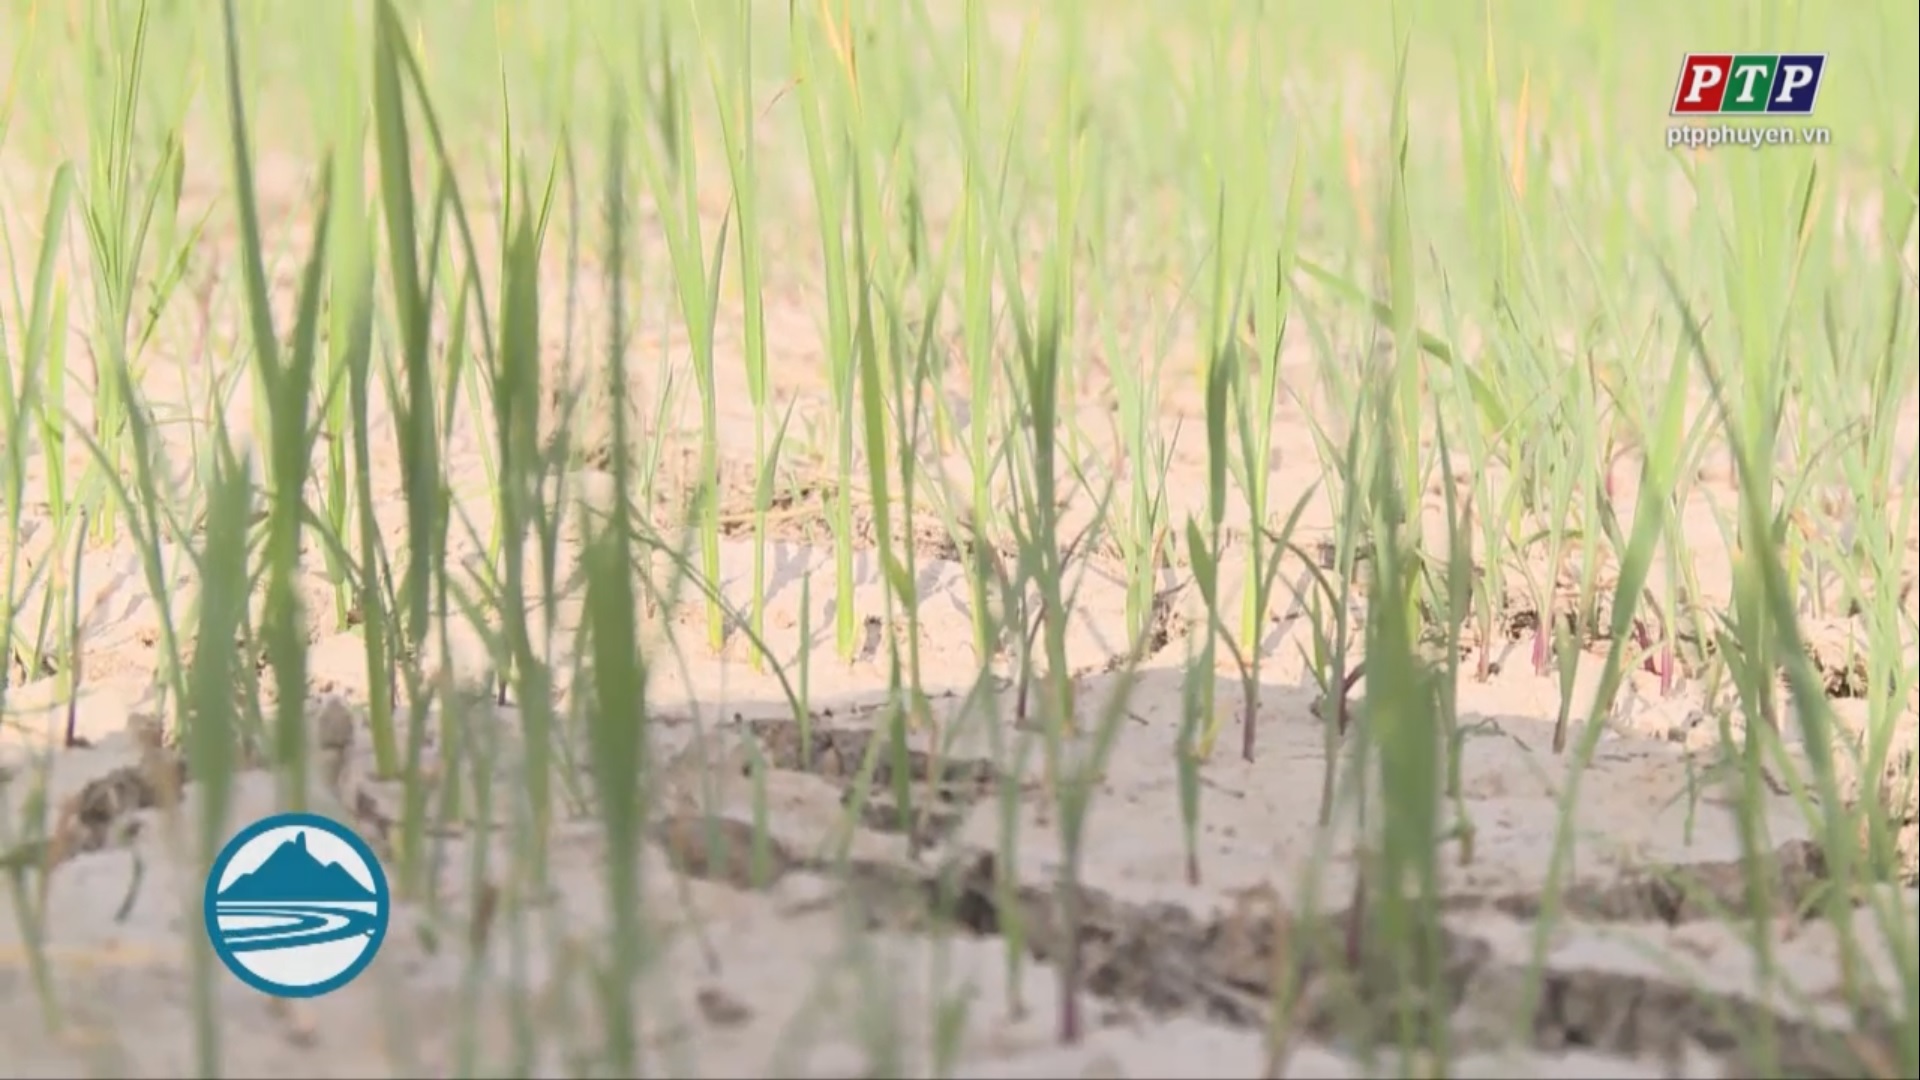 Căng thảng nước tưới ngay từ đầu vụ lúa hè thu 2019